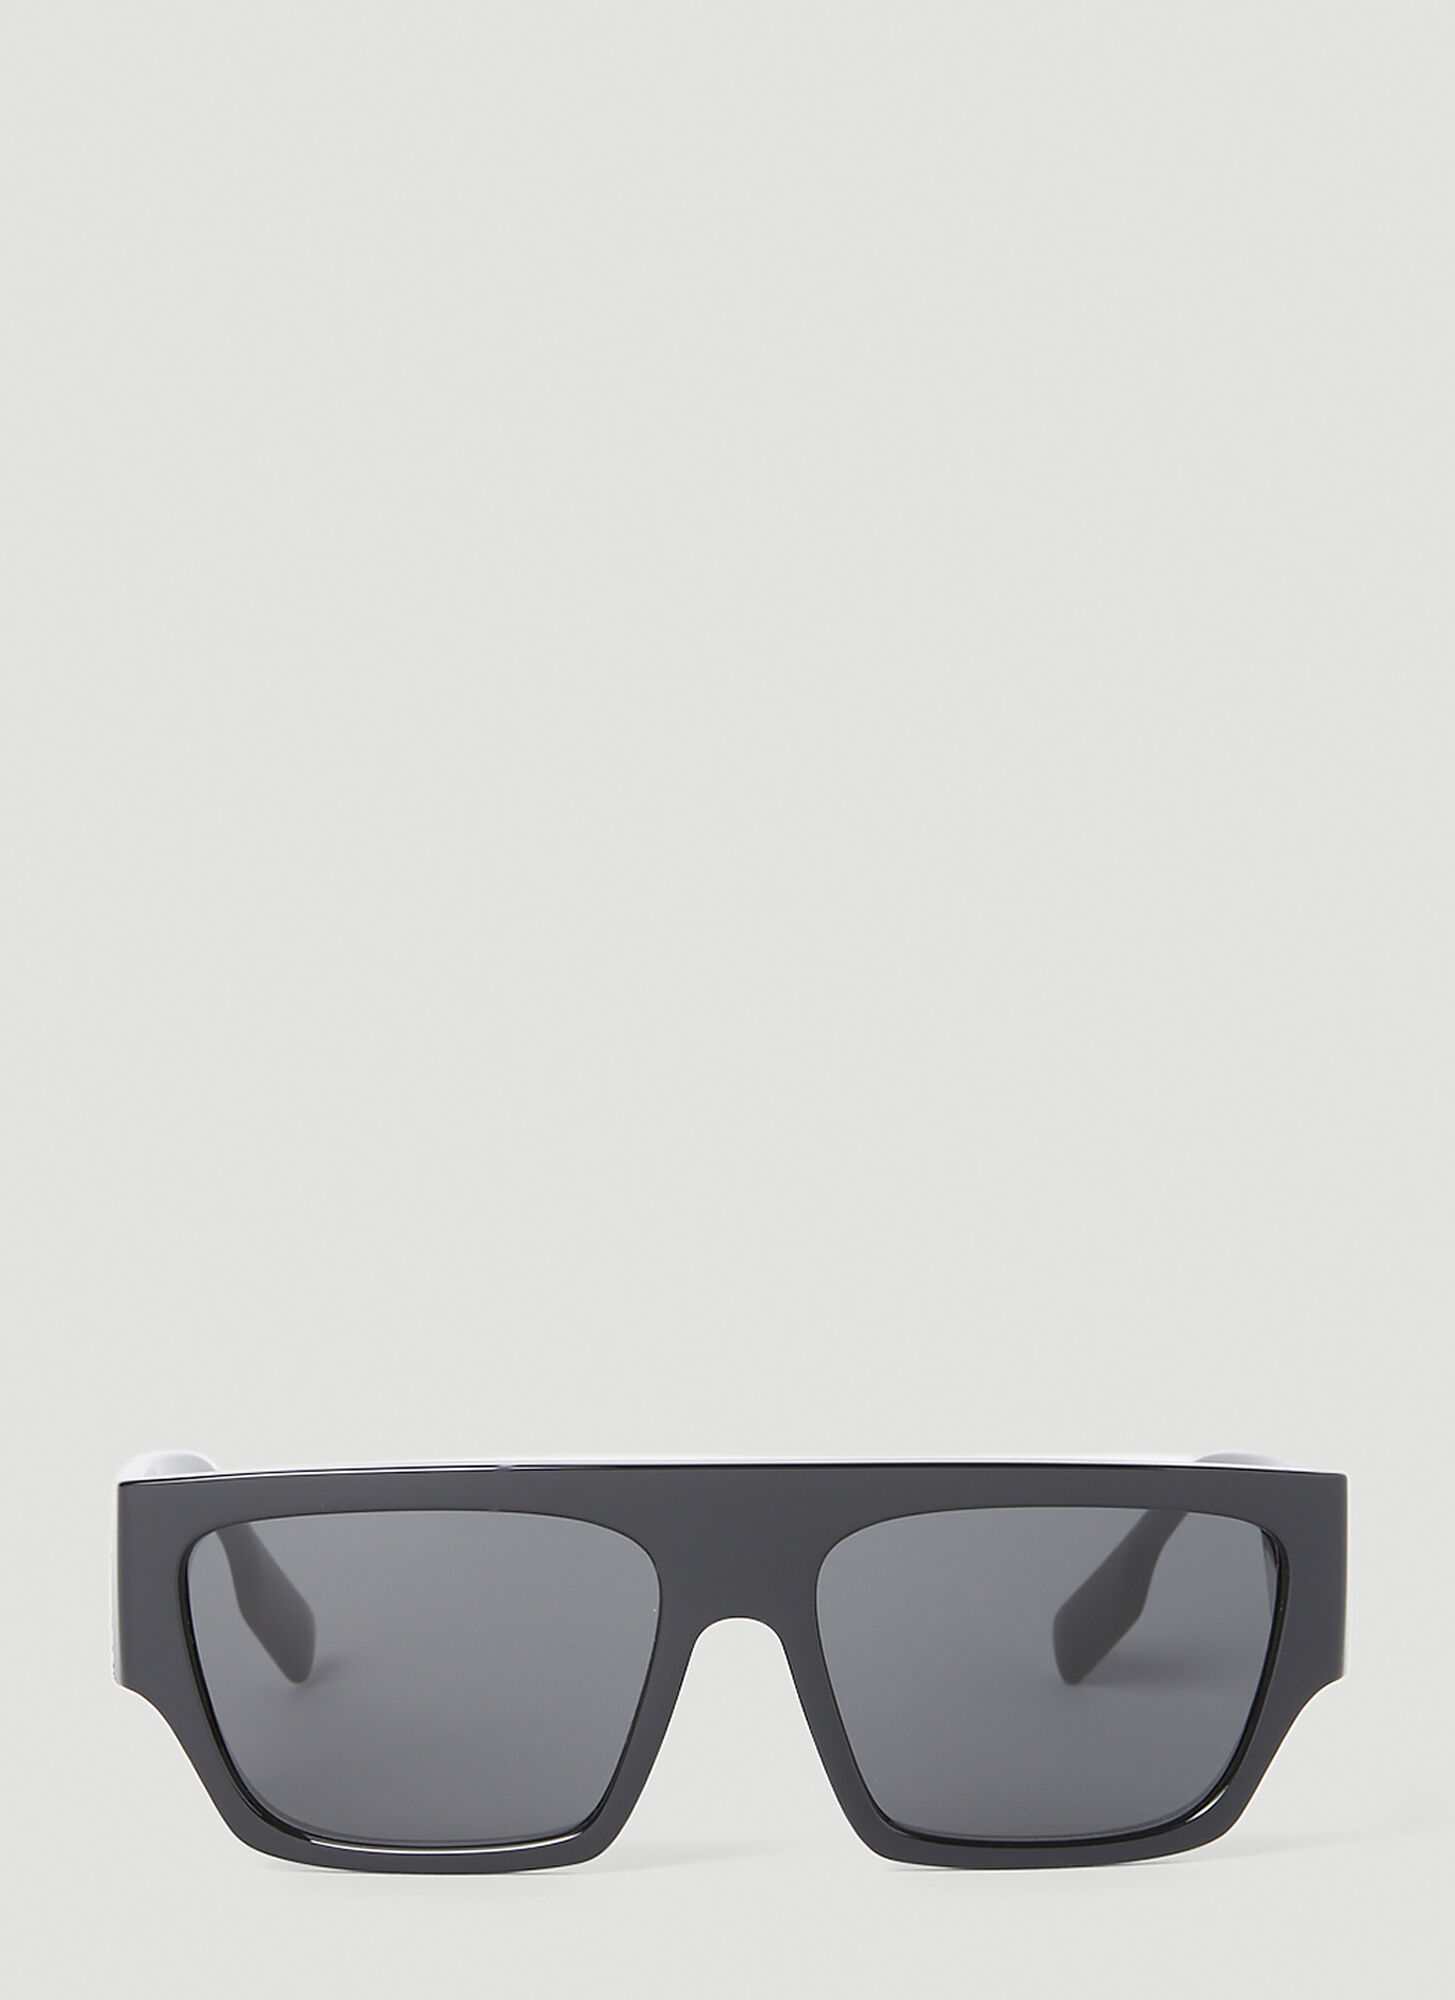 Burberry Kids Sunglasses, Gradient JB4340 - Red